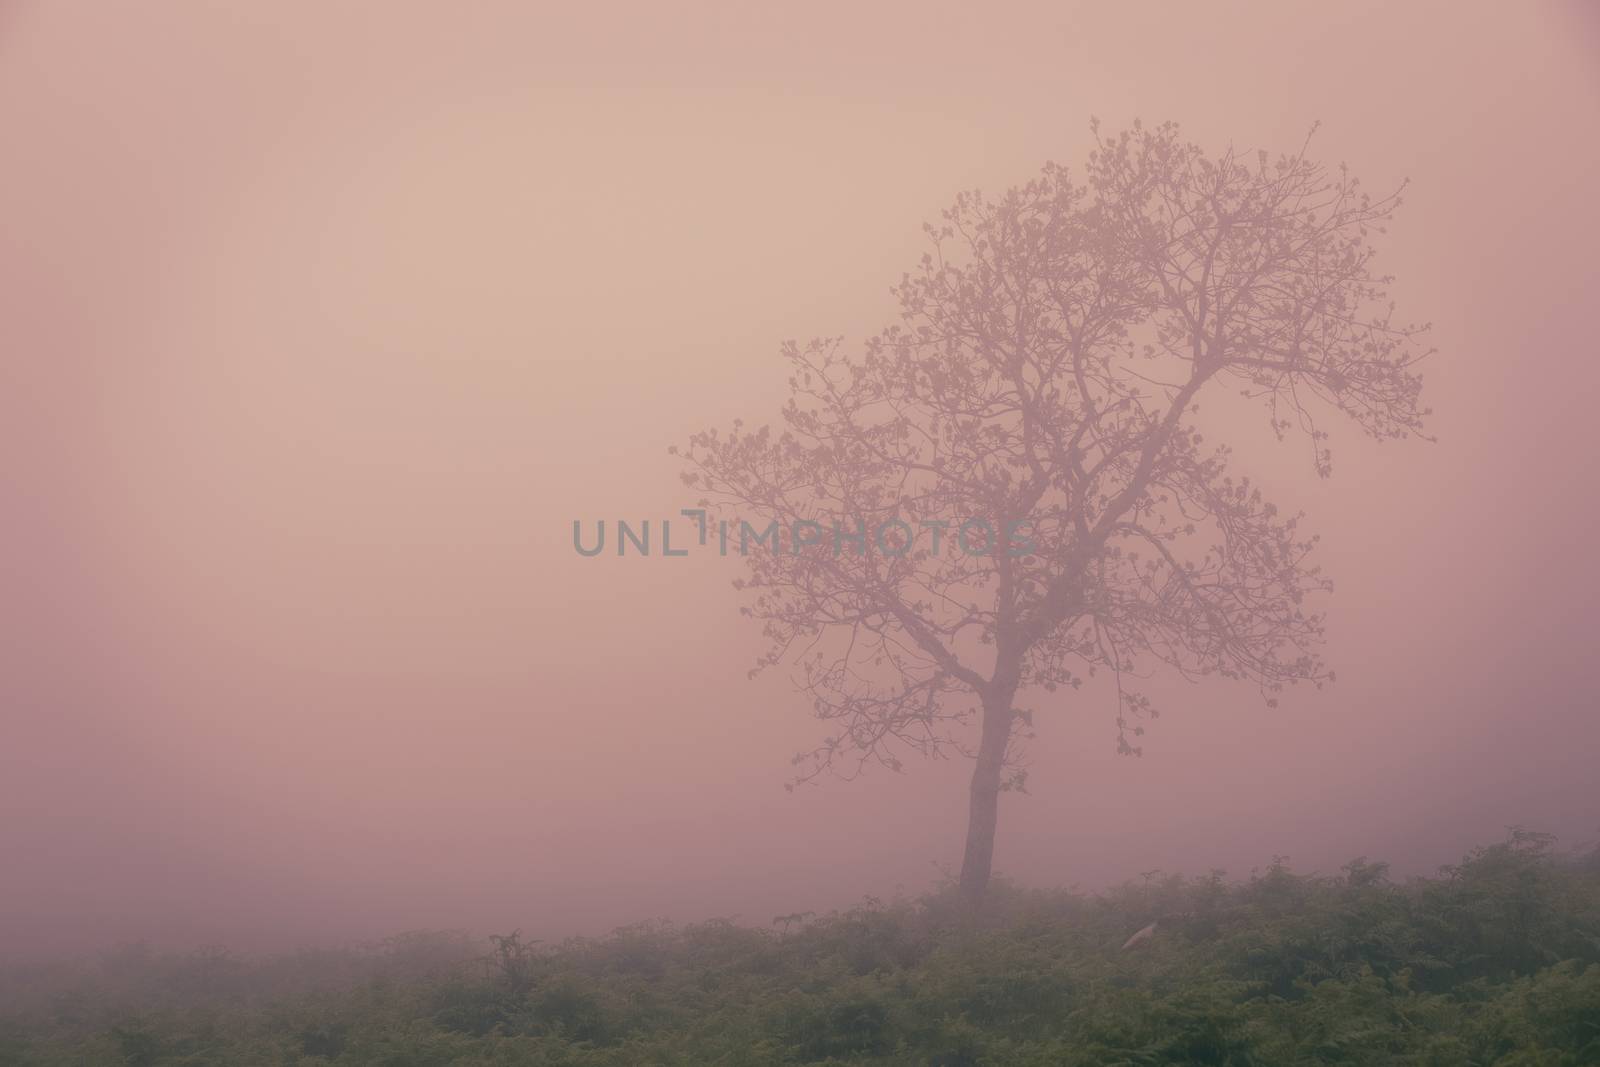 Tree in the fog by Nemida